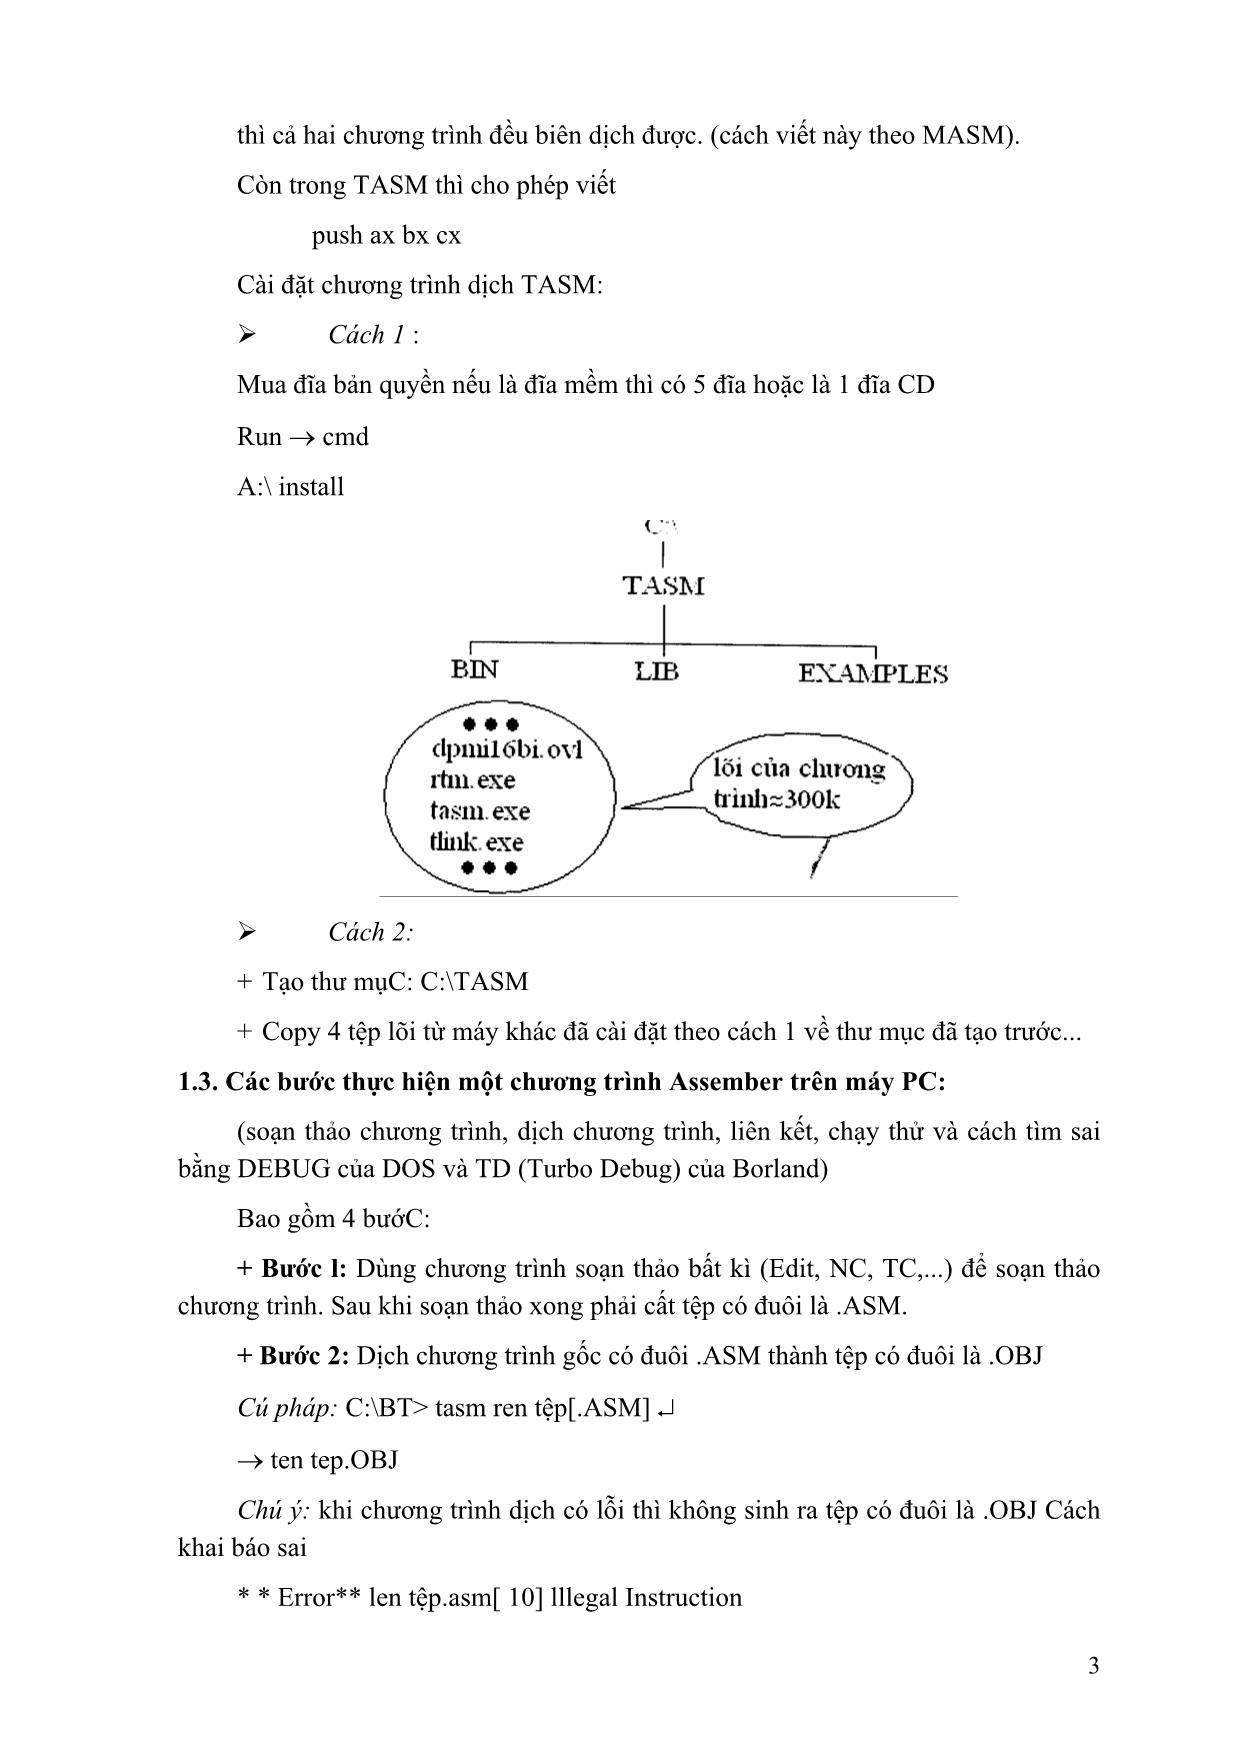 Giáo trình Lập trình hợp ngữ (Phần 1) trang 3